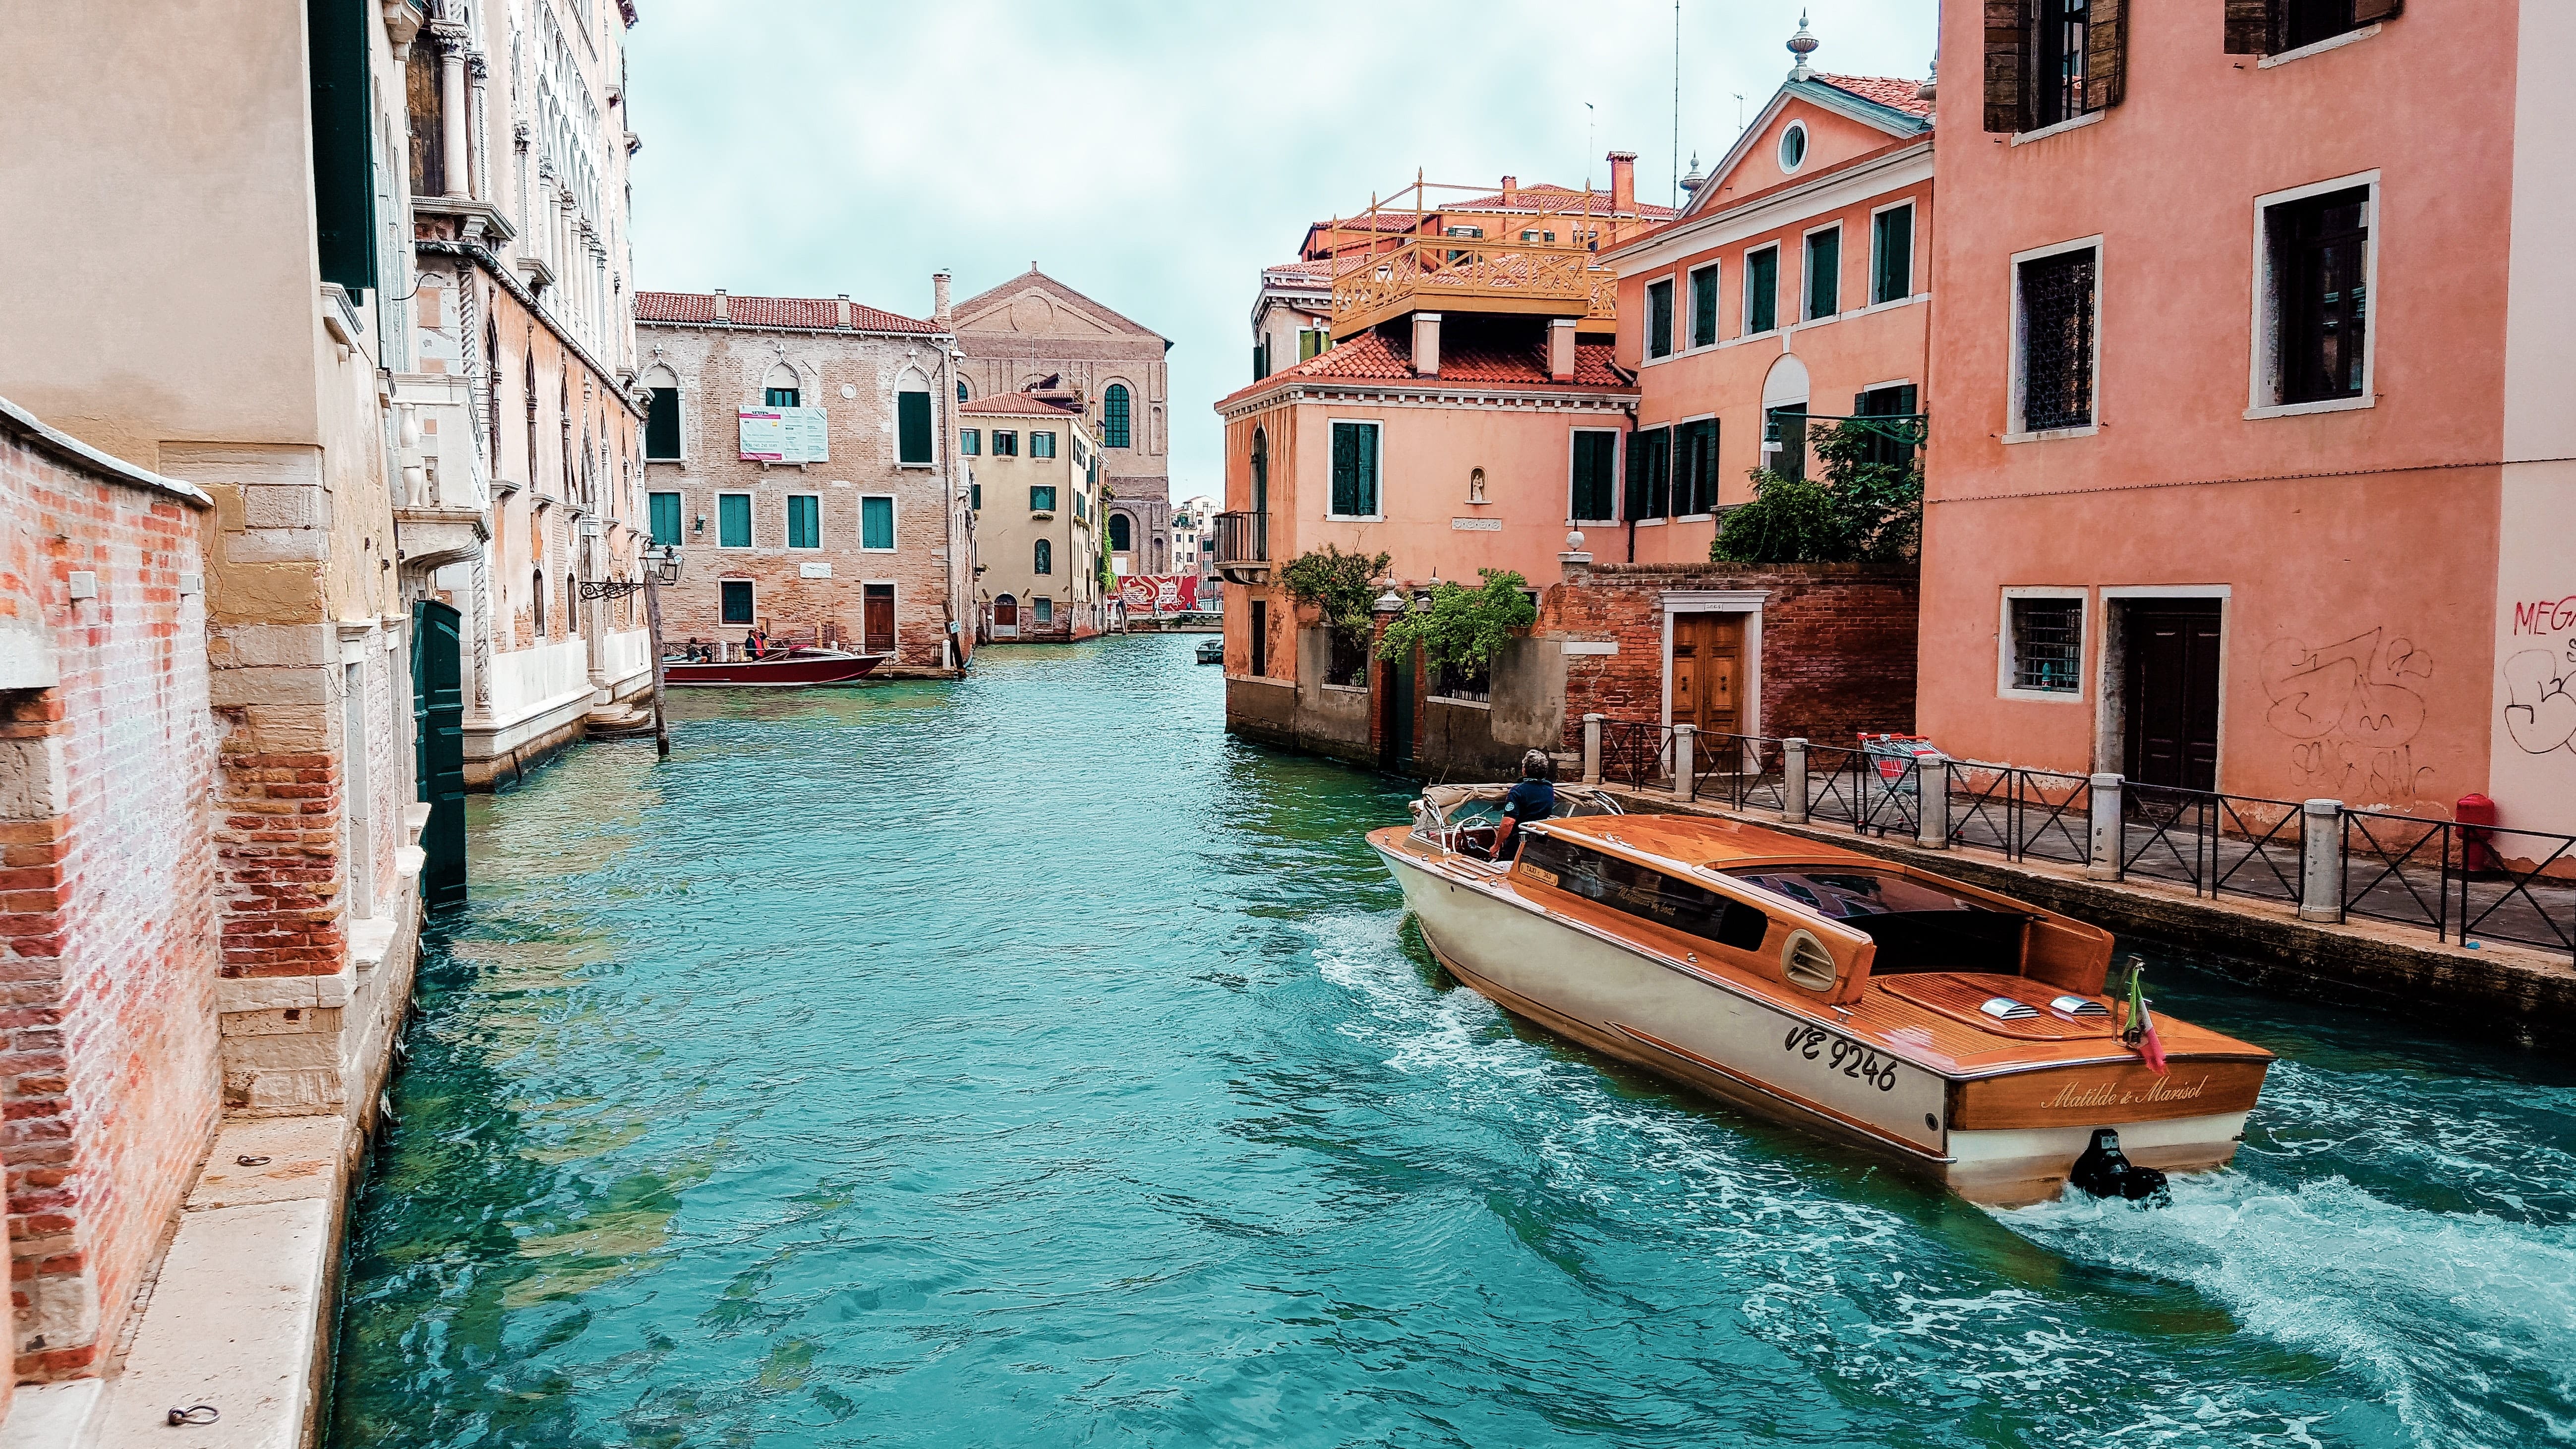 Река в венеции. Венеция Италия. Italy Венеция. Grand canal Венеция. Бирюзовый канал, Венеция, Италия.